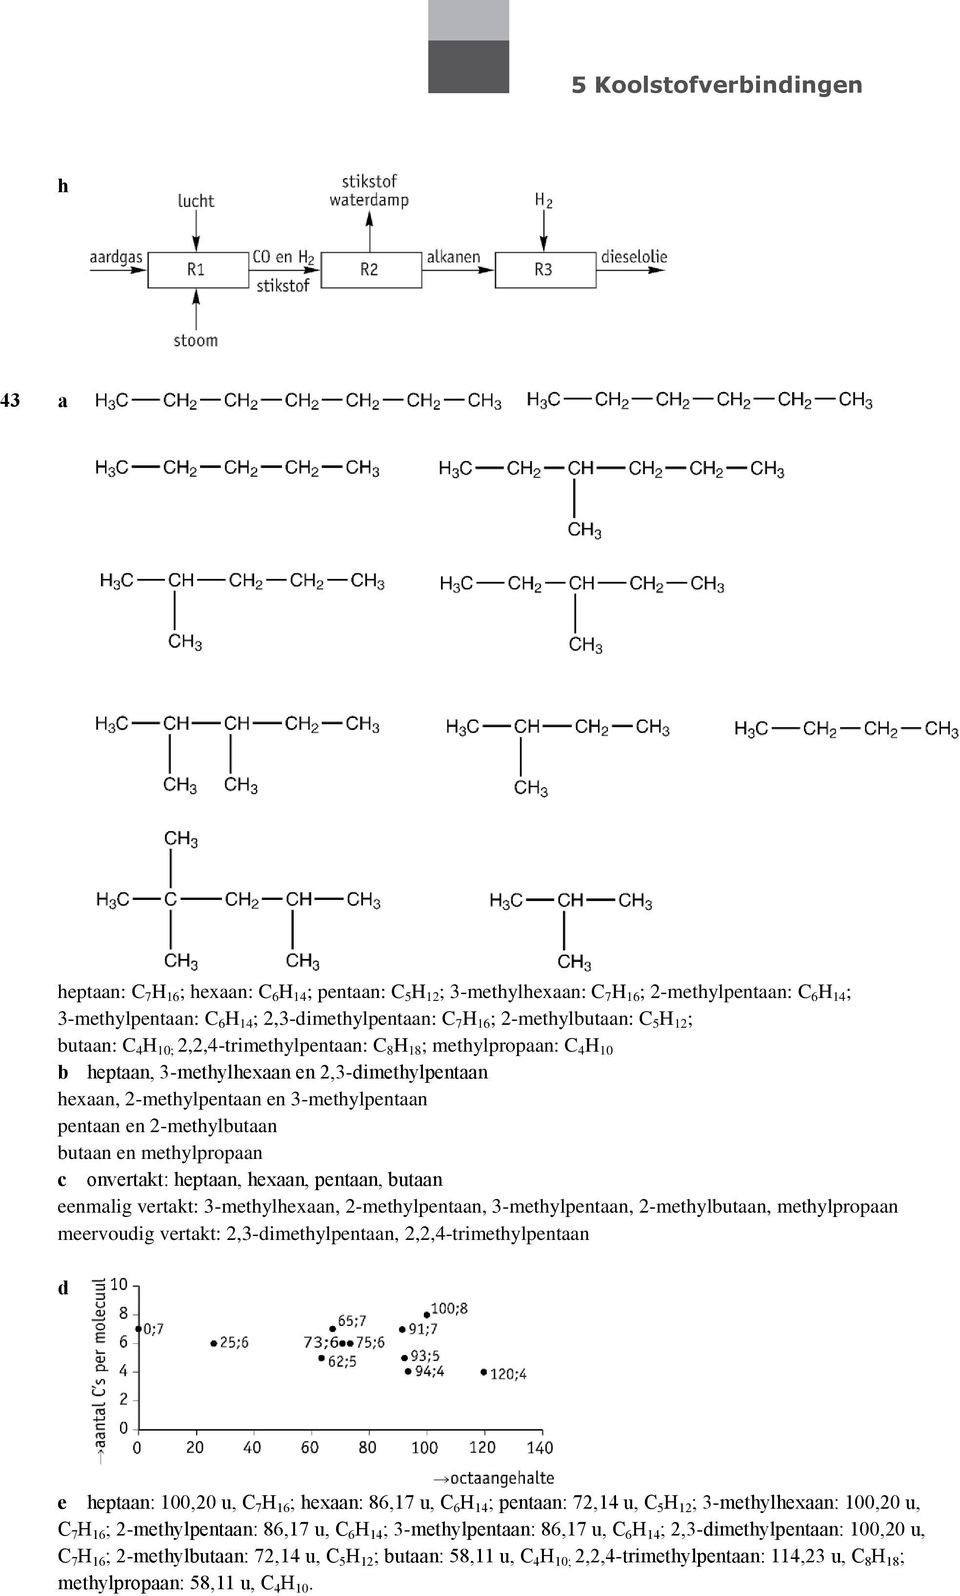 utaan en methylpropaan c onvertakt: heptaan, hexaan, pentaan, utaan eenmalig vertakt: 3-methylhexaan, 2-methylpentaan, 3-methylpentaan, 2-methylutaan, methylpropaan meervoudig vertakt: